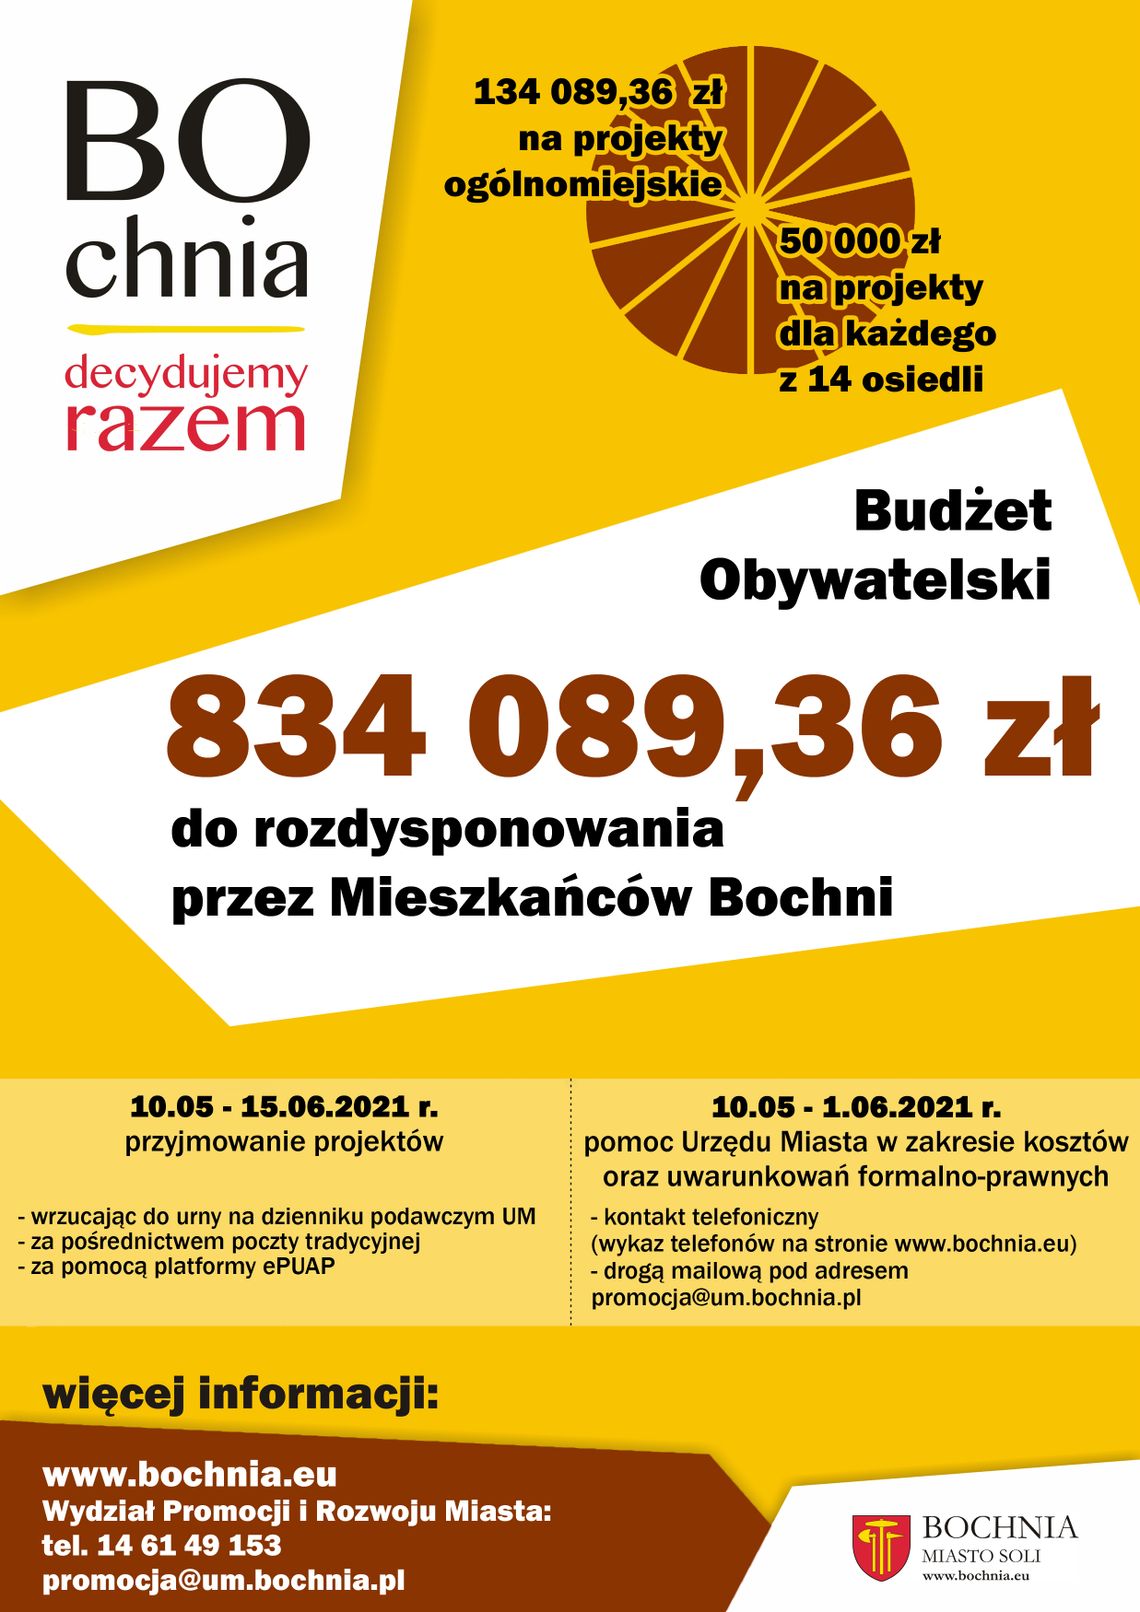 Bochnia. Ponad 834 tys. zł w siódmej edycji Budżetu Obywatelskiego